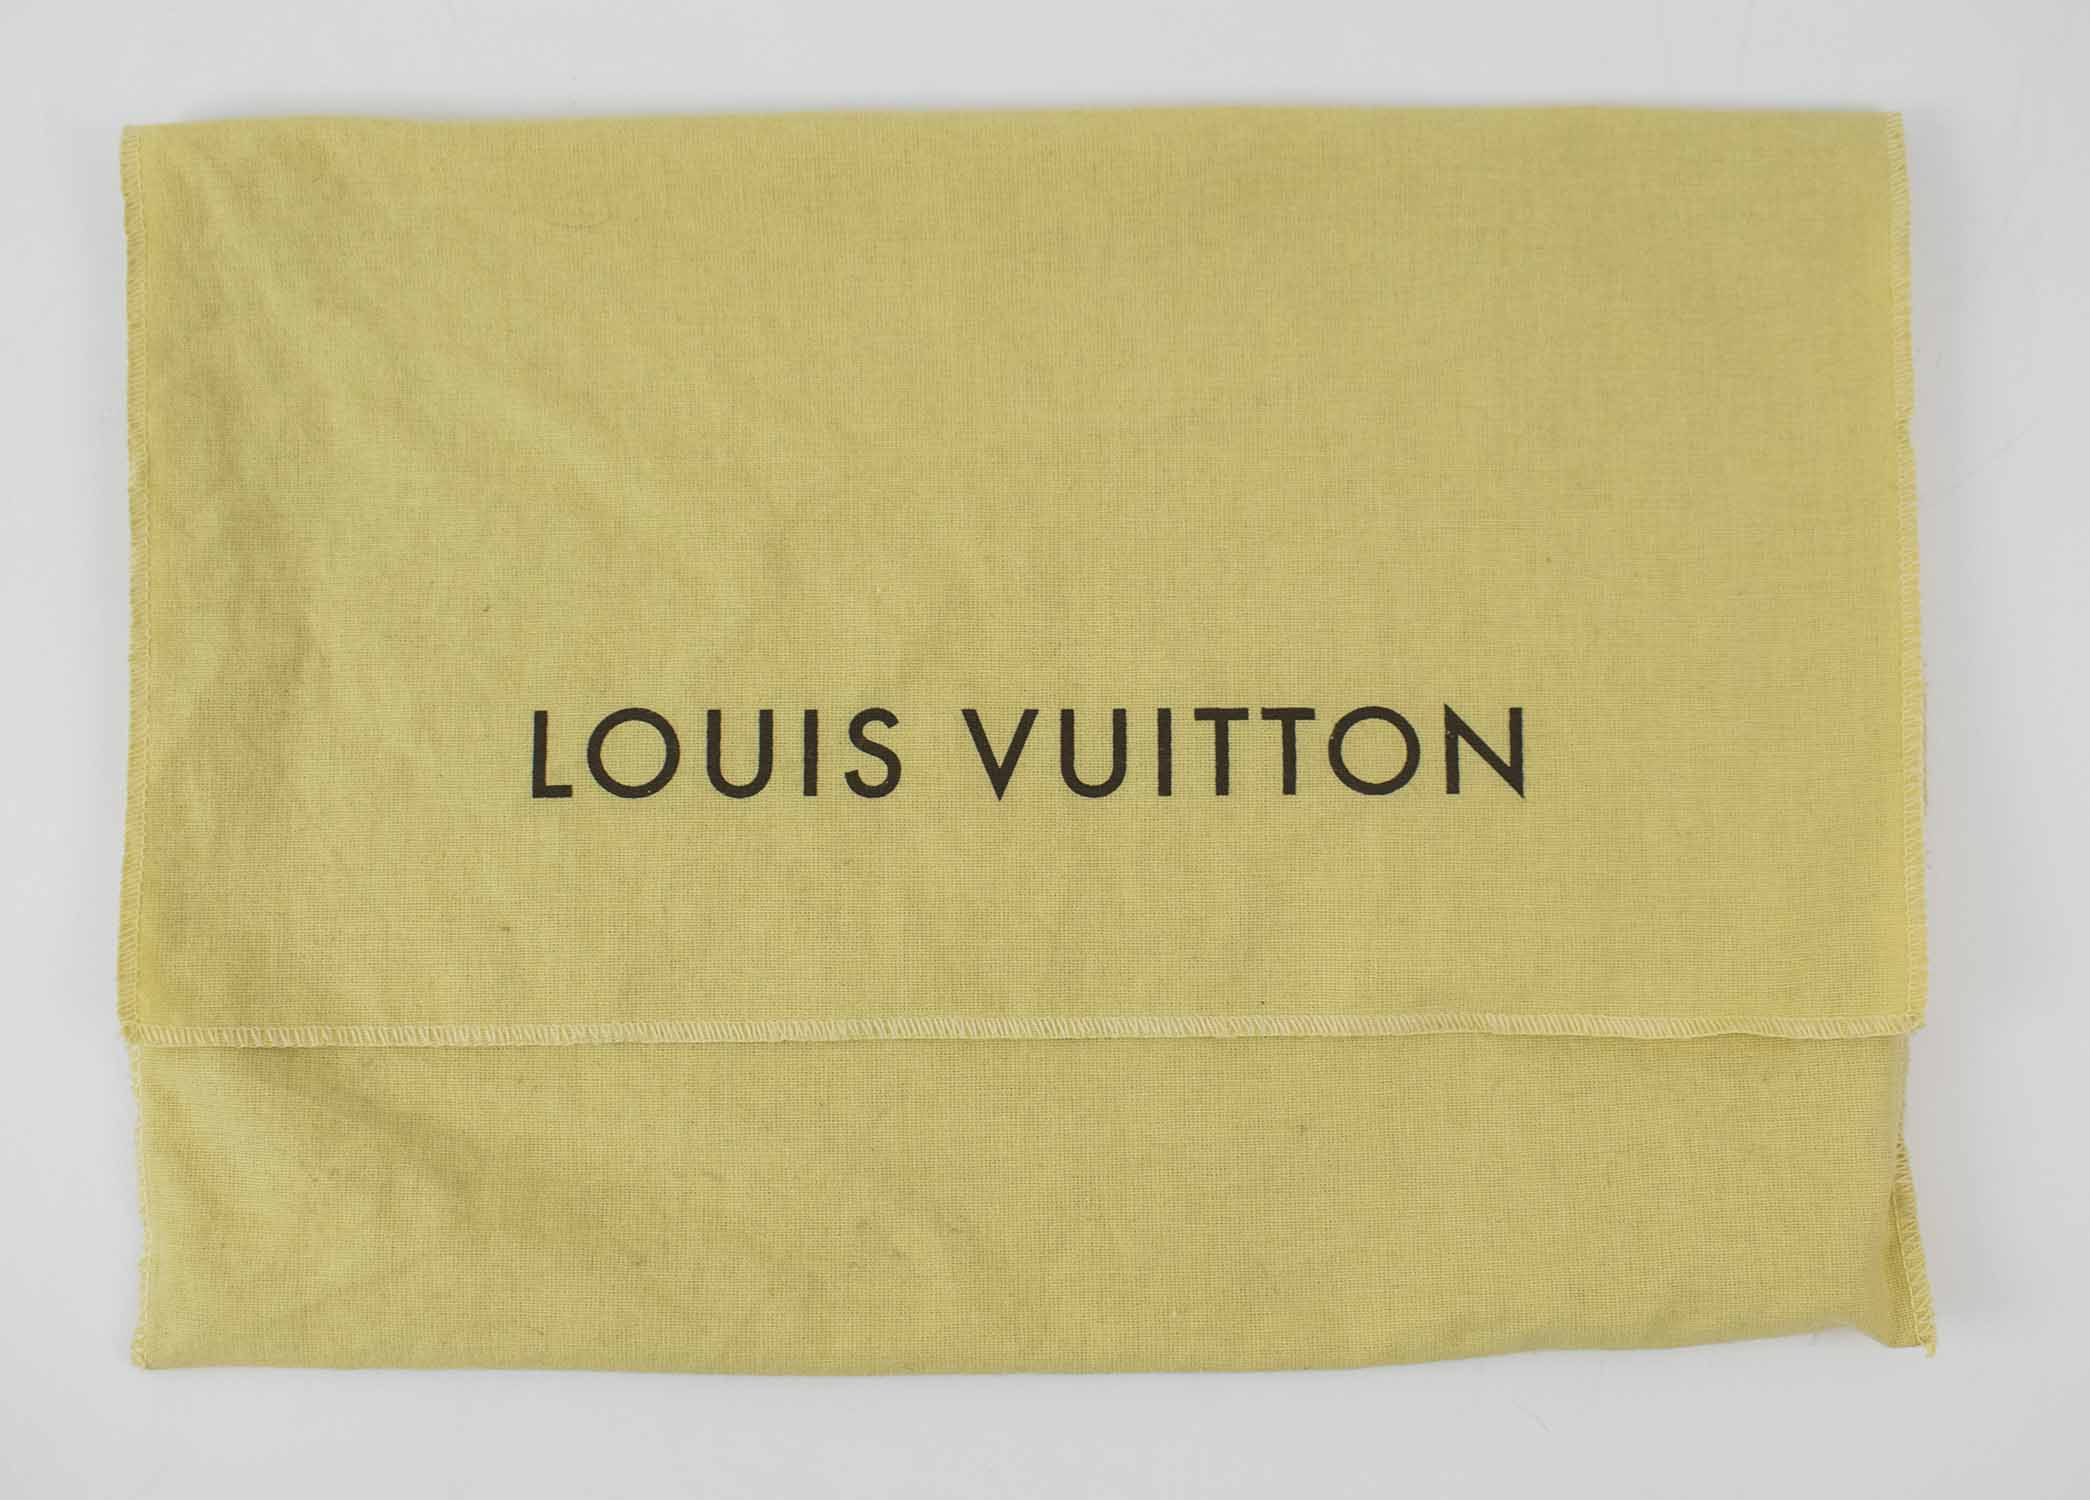 Sold at Auction: AUTHENTIC LOUIS VUITTON DUST BAG